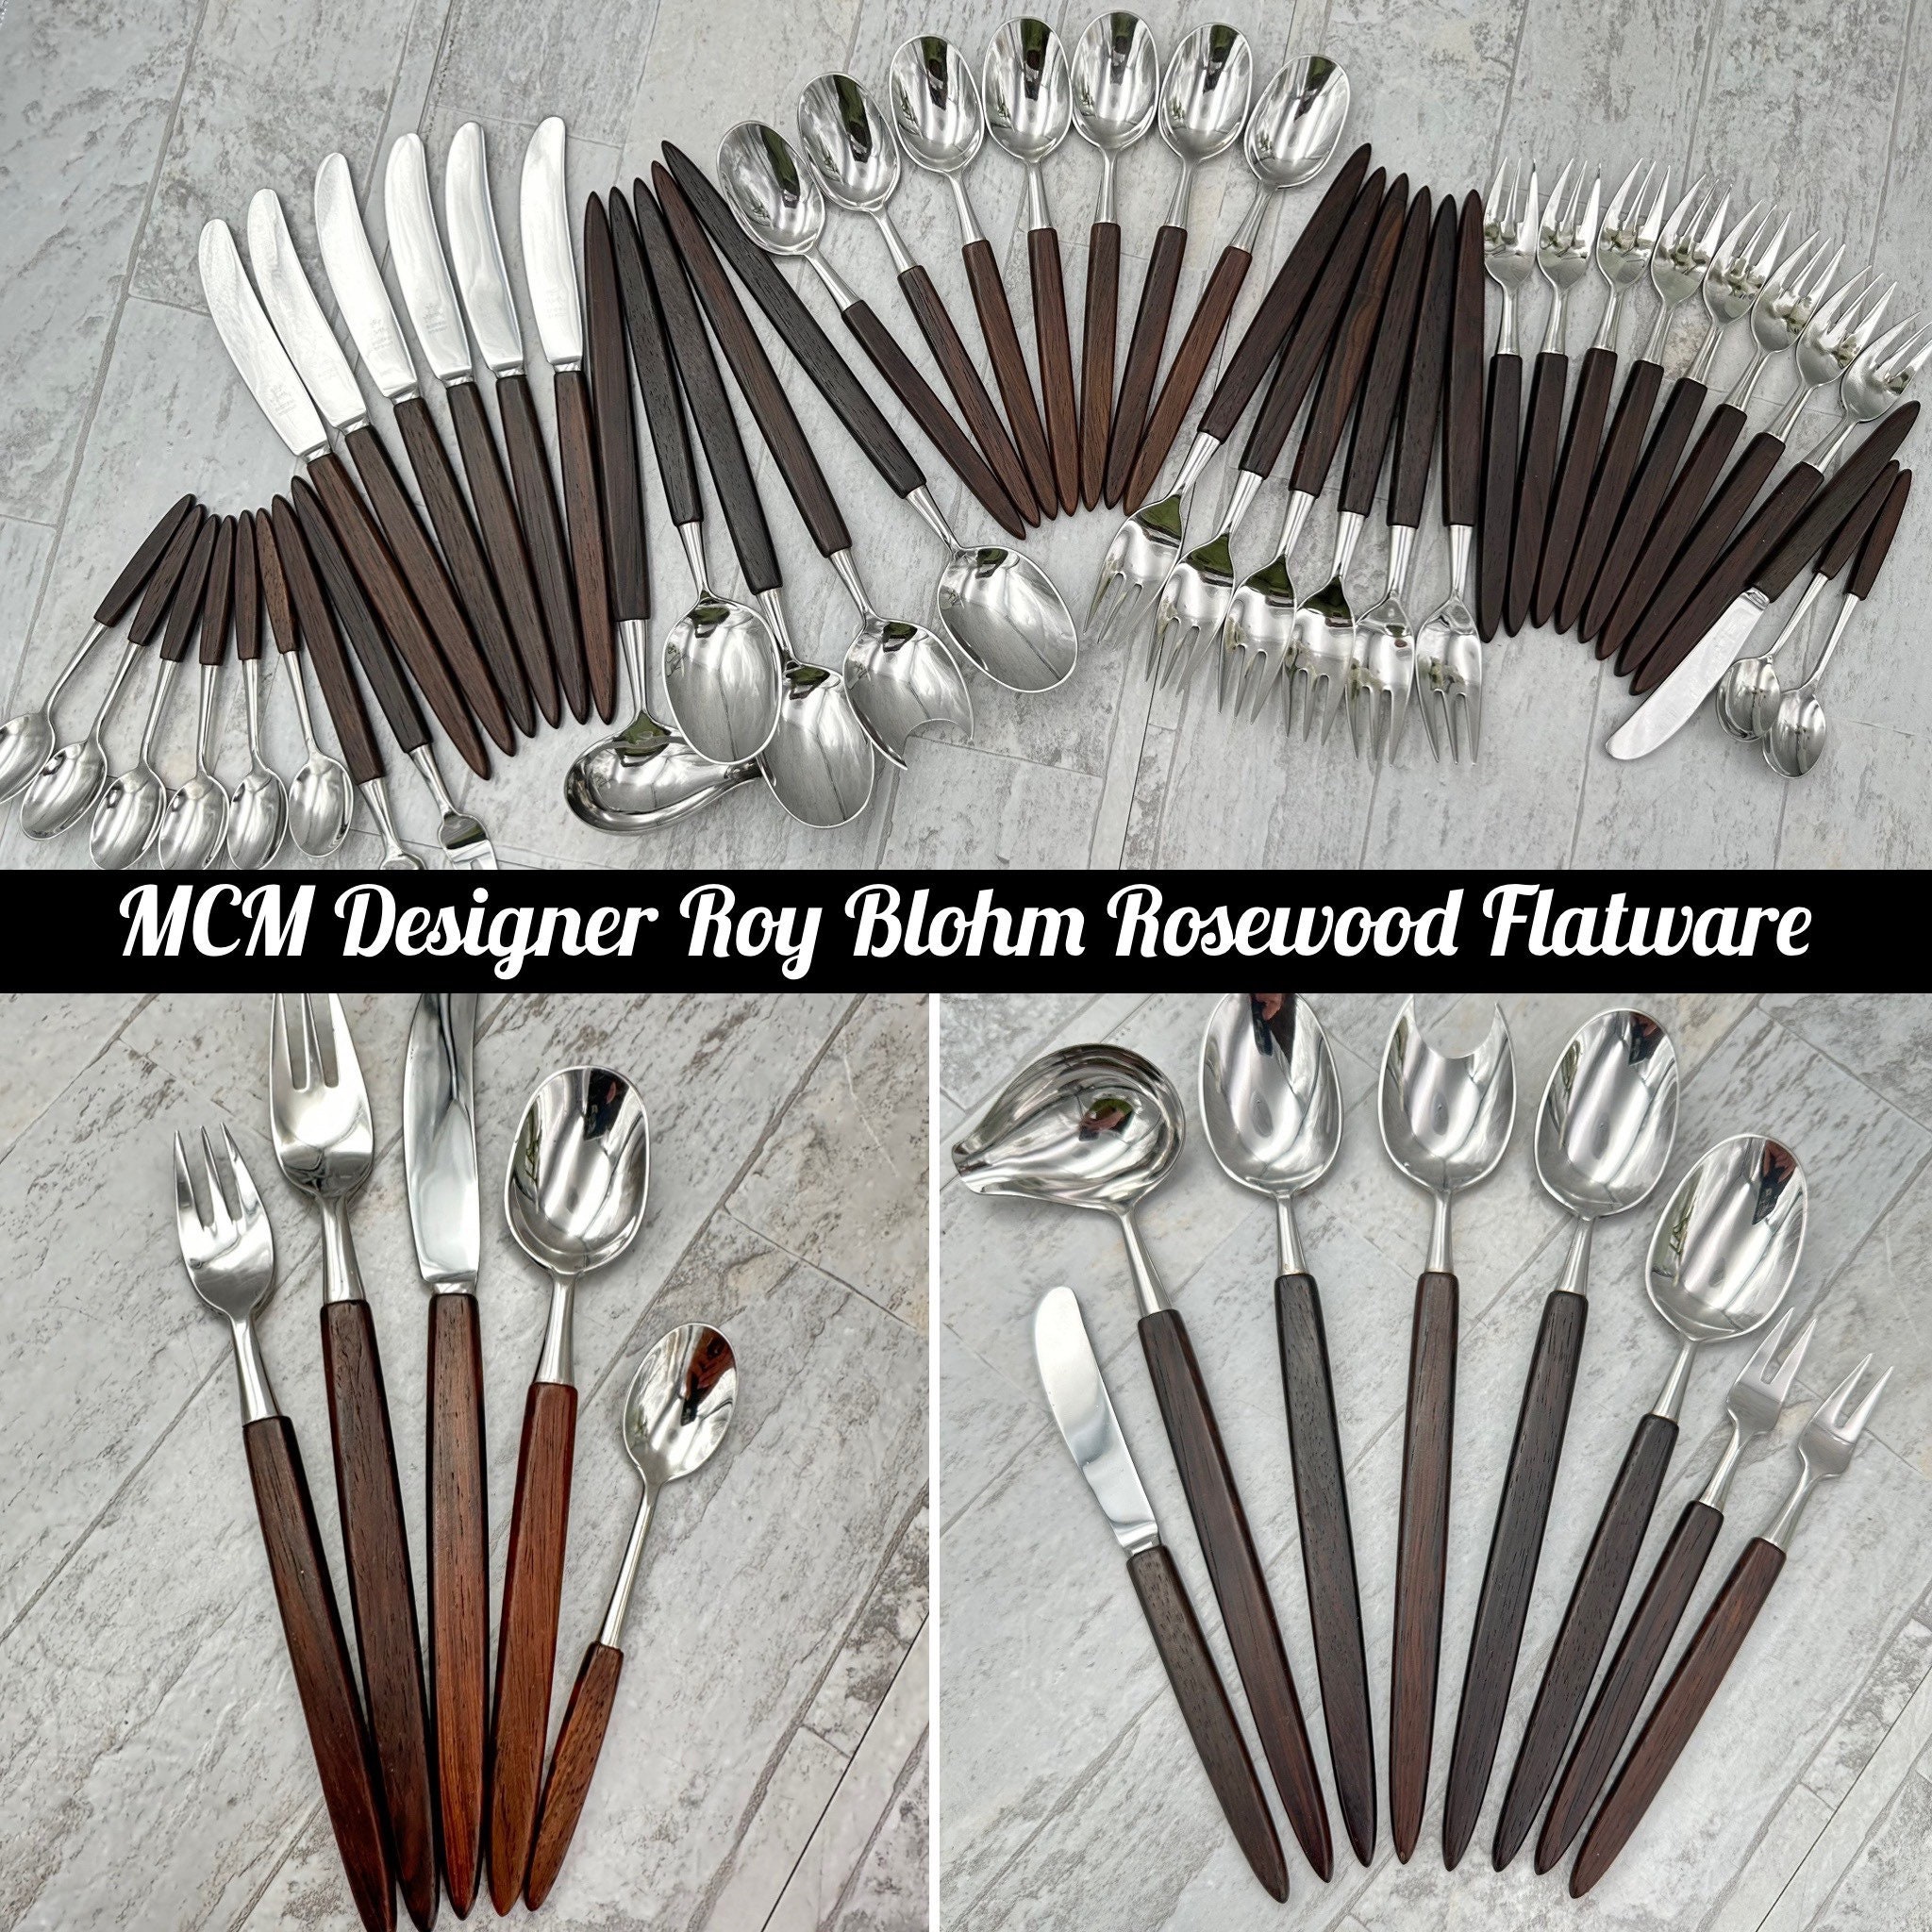 Rustic Wood Handle Stainless Steel Silverware Set – Hadley